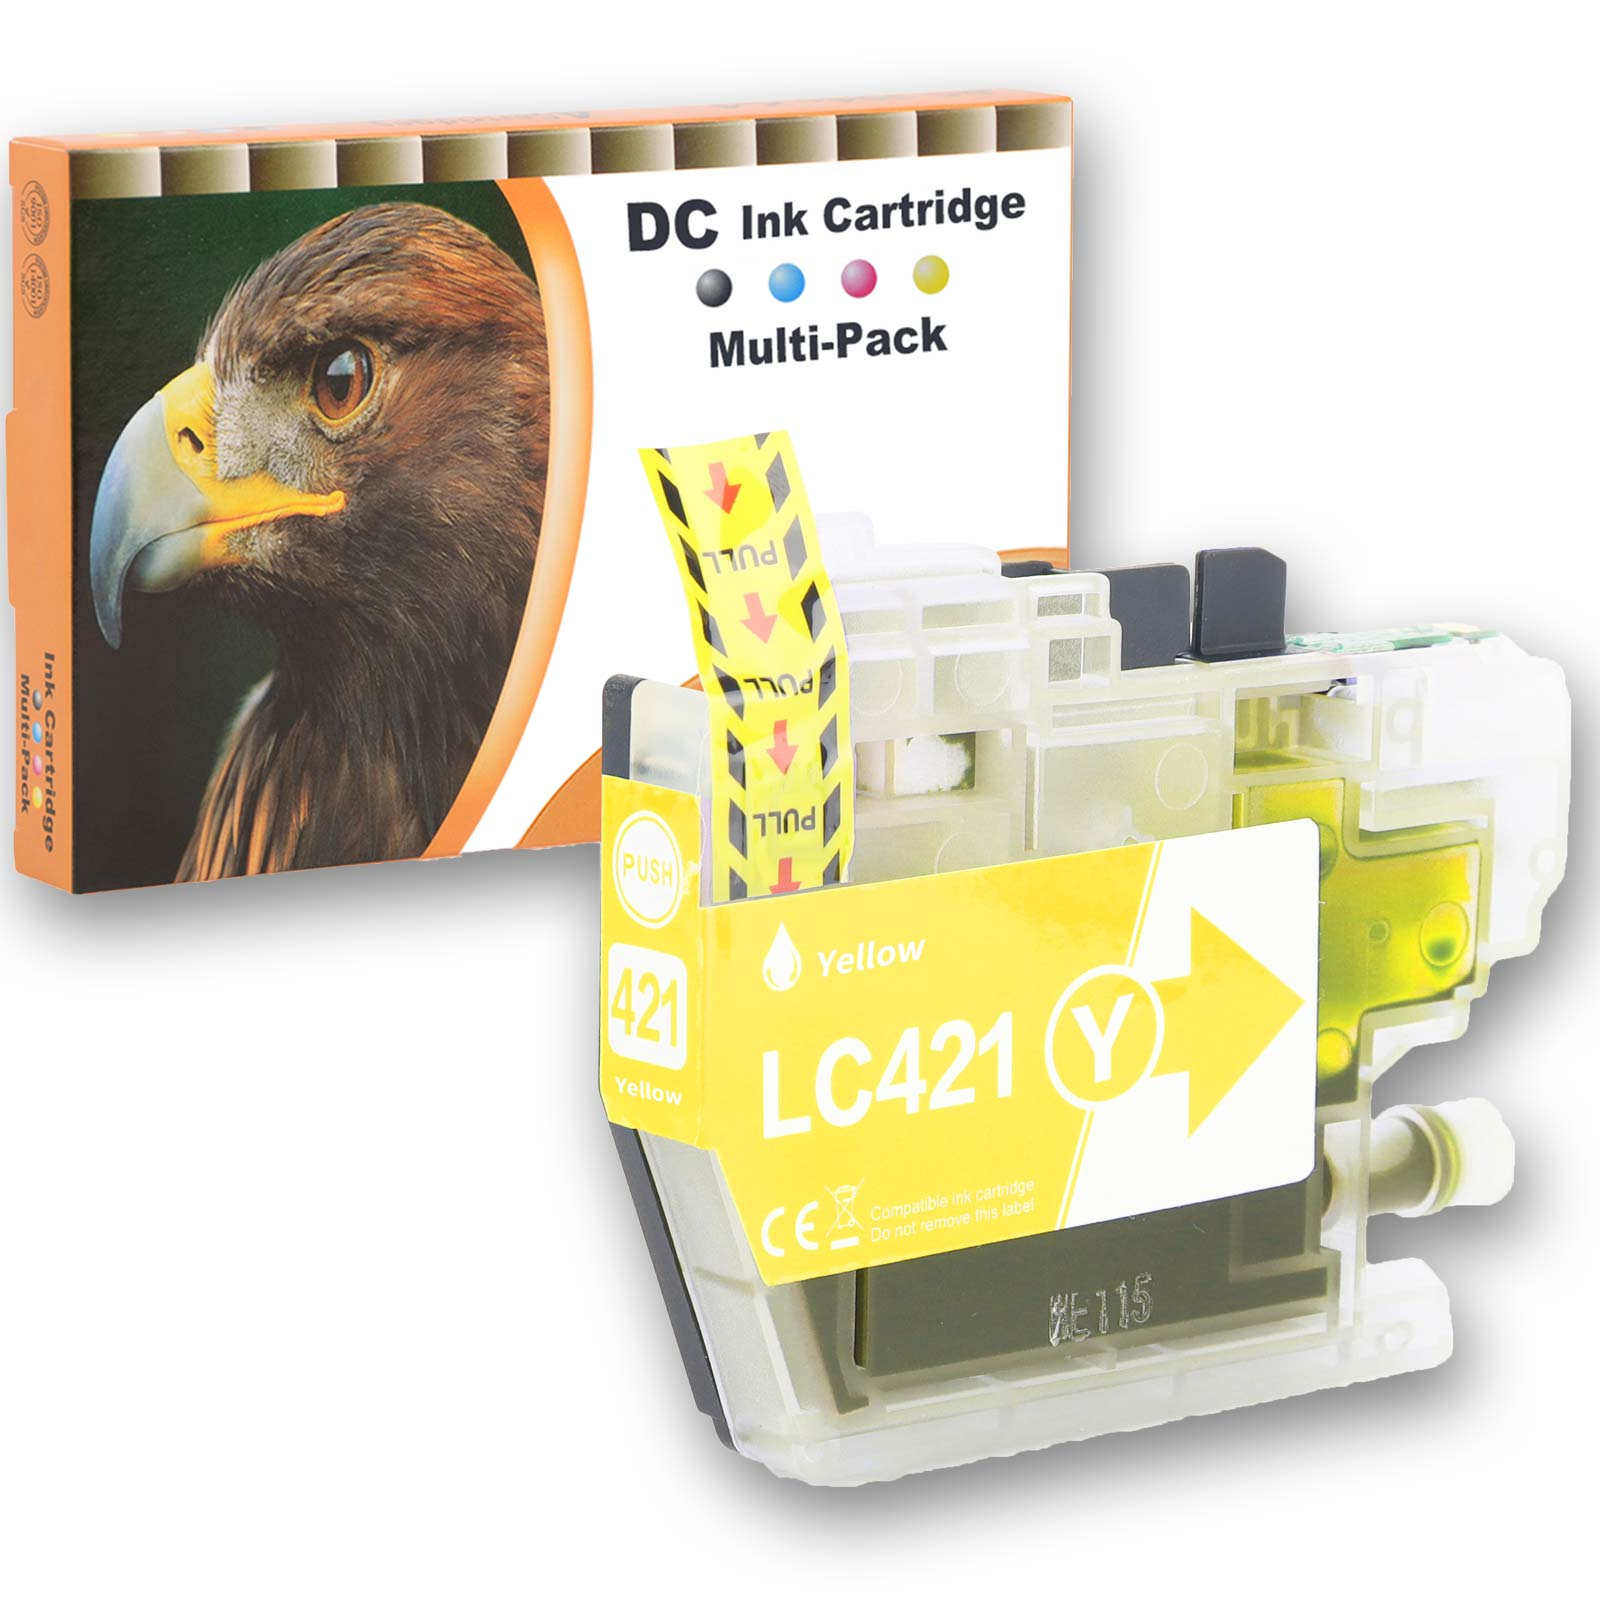 GIGAO Kompatibel Brother LC-421 Y Patrone Gigao Seiten Yellow von (LC-421) Gelb Gelb für Tinte Druckerpatrone 200